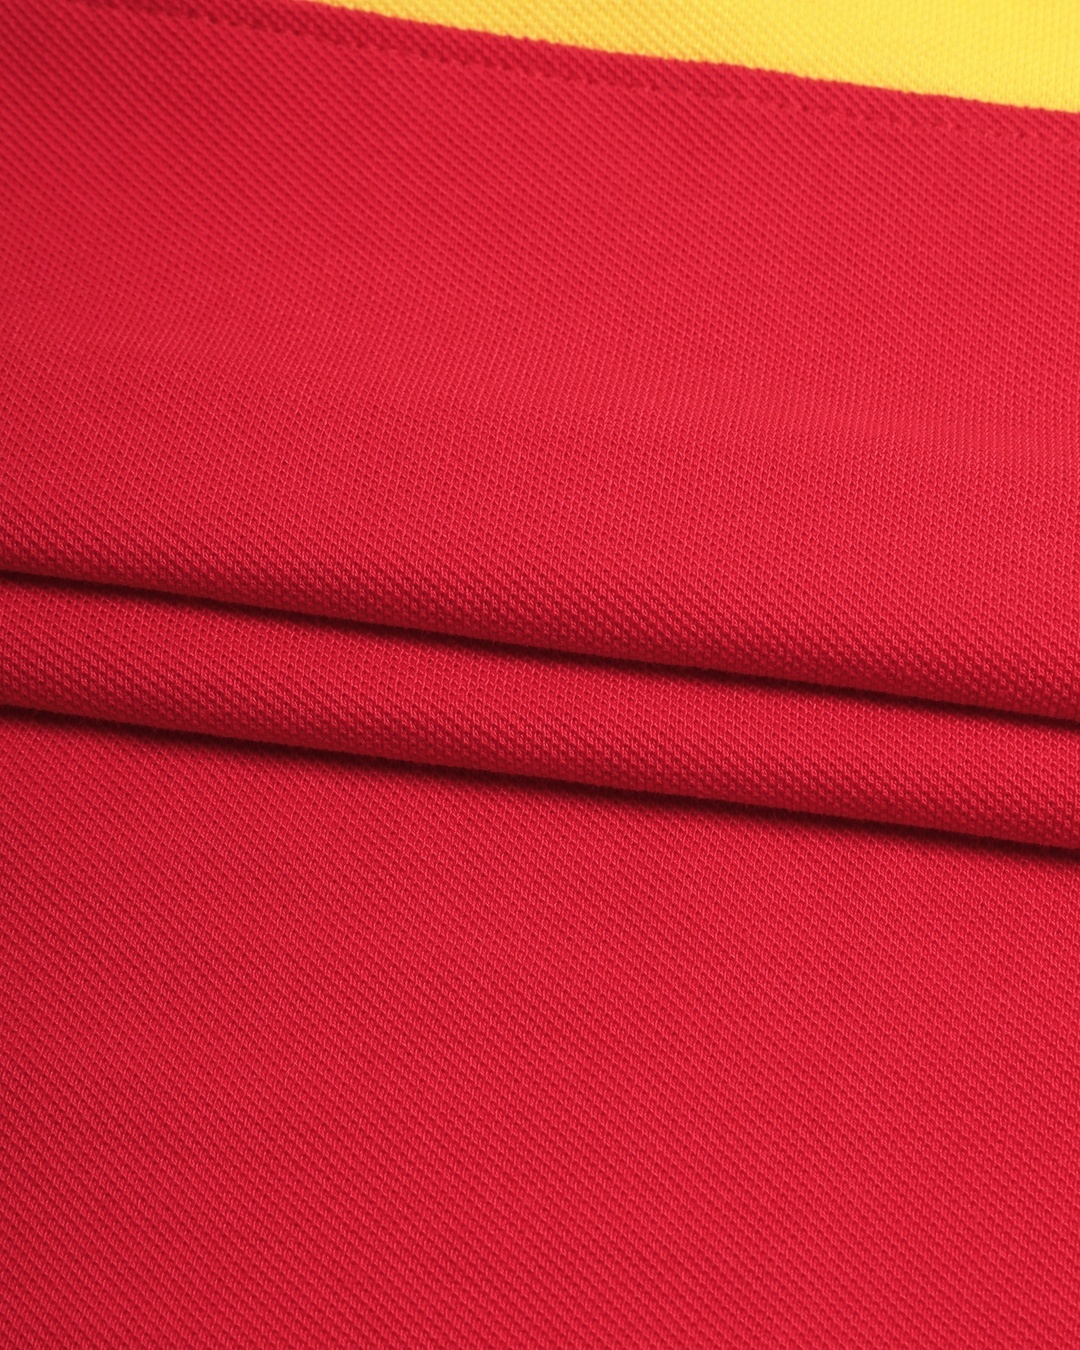 Shop Men's Lemon Crome & Crimson Red Color Block Polo T-shirt